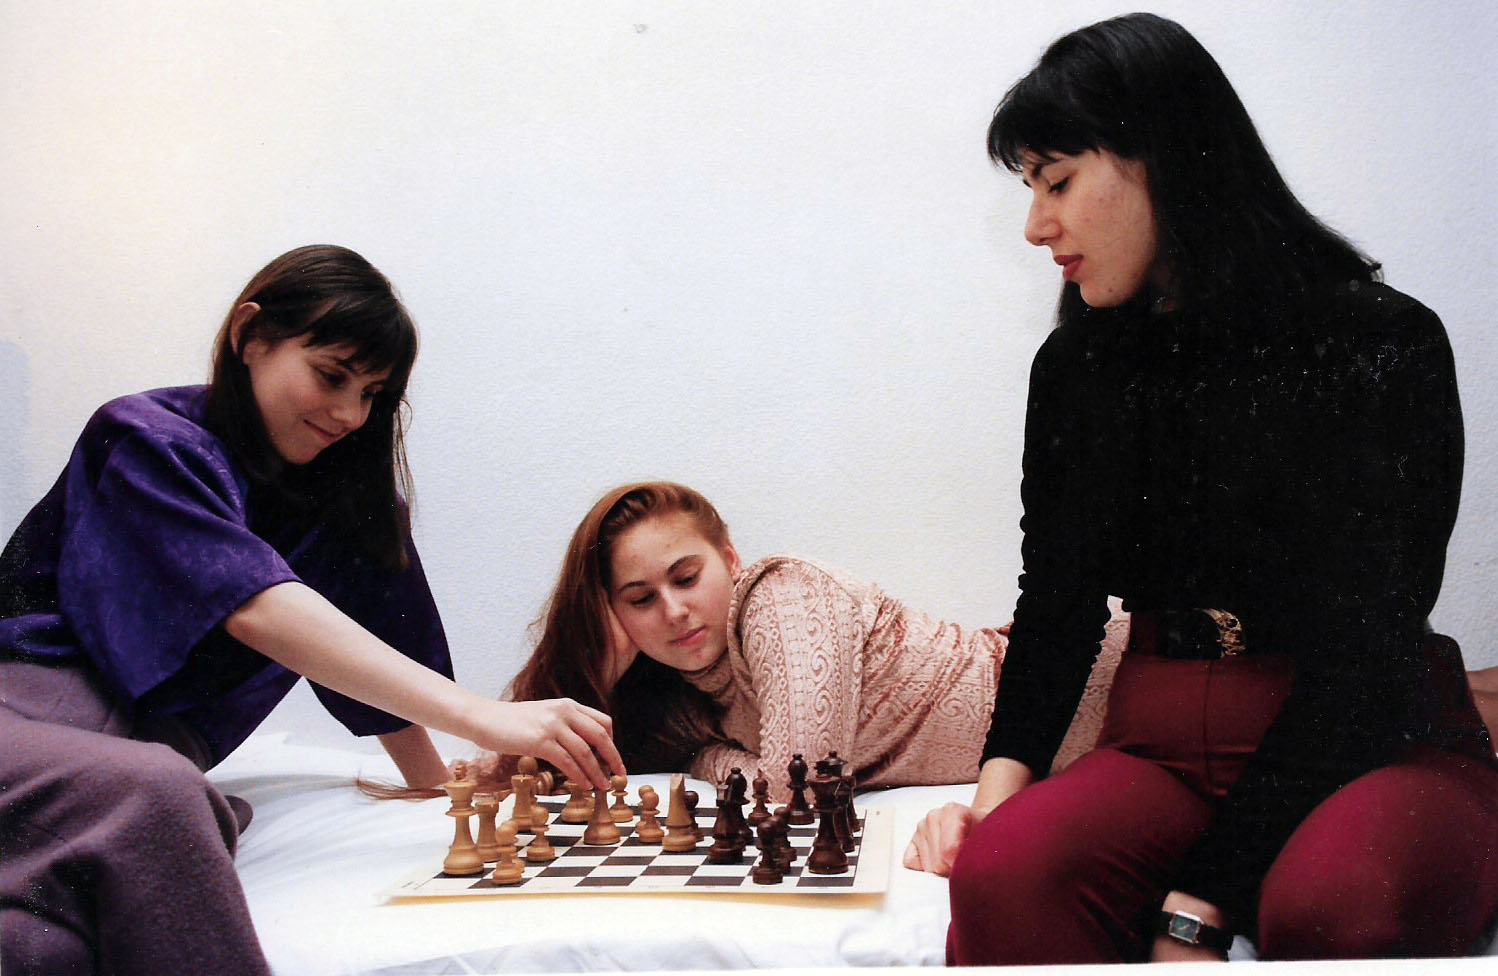 Ajedrez, la lucha continúa: D45 - Gambito de Dama - Variante anti-merano -  con piezas blancas - Ferchu